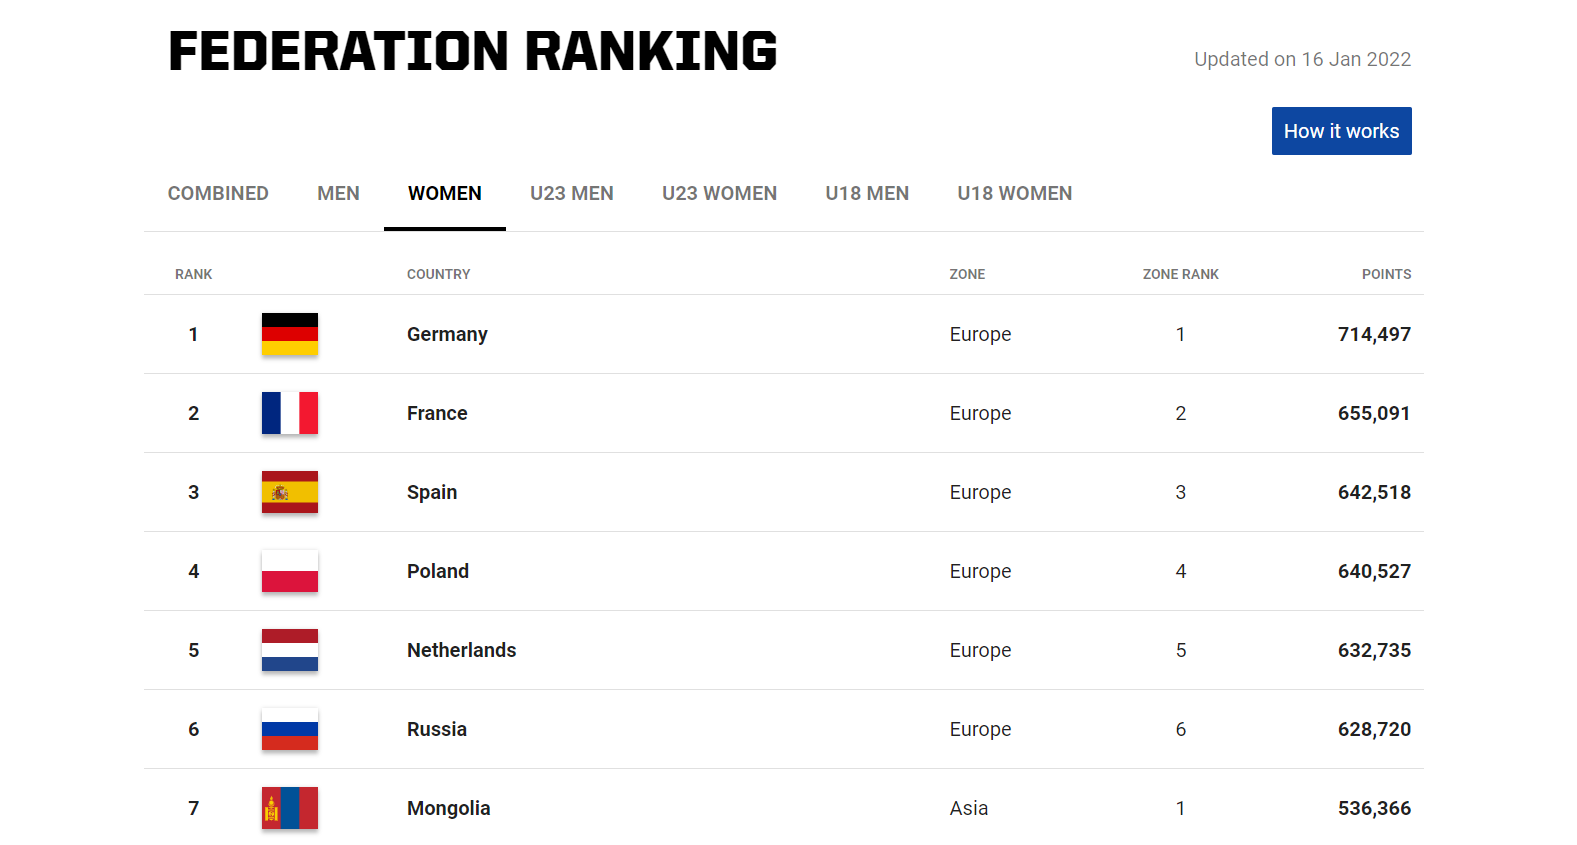 Das FIBA 3x3 Federation Ranking der Damen vom 16. Januar 2022 zeigt die DBB-Auswahl auf Platz 1 vor Frankreich und Spanien.